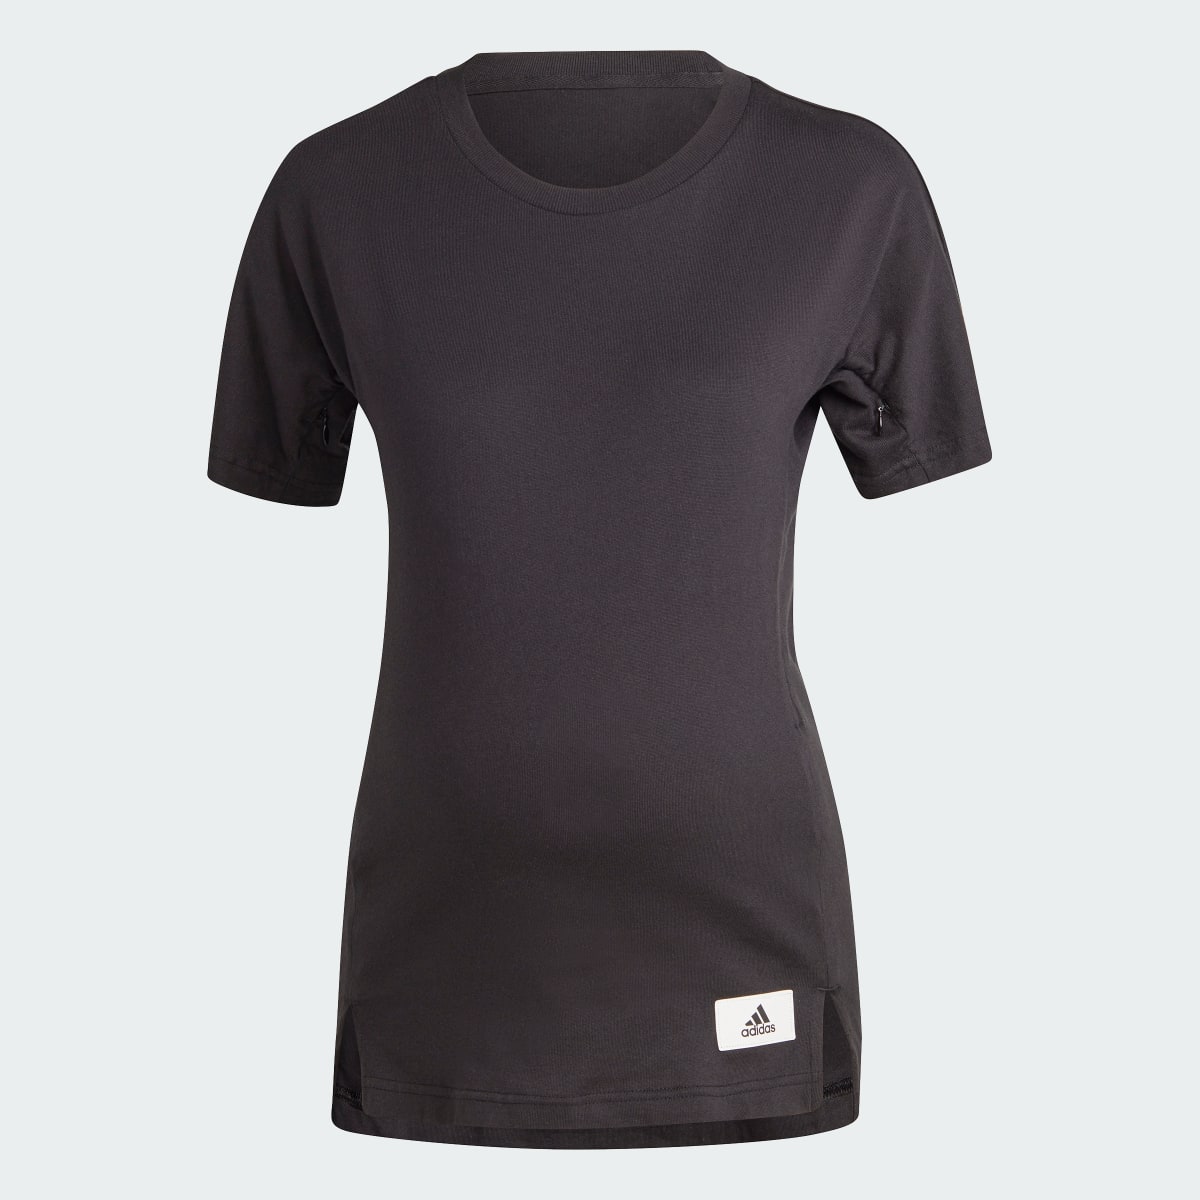 Adidas T-shirt (Maternité). 5